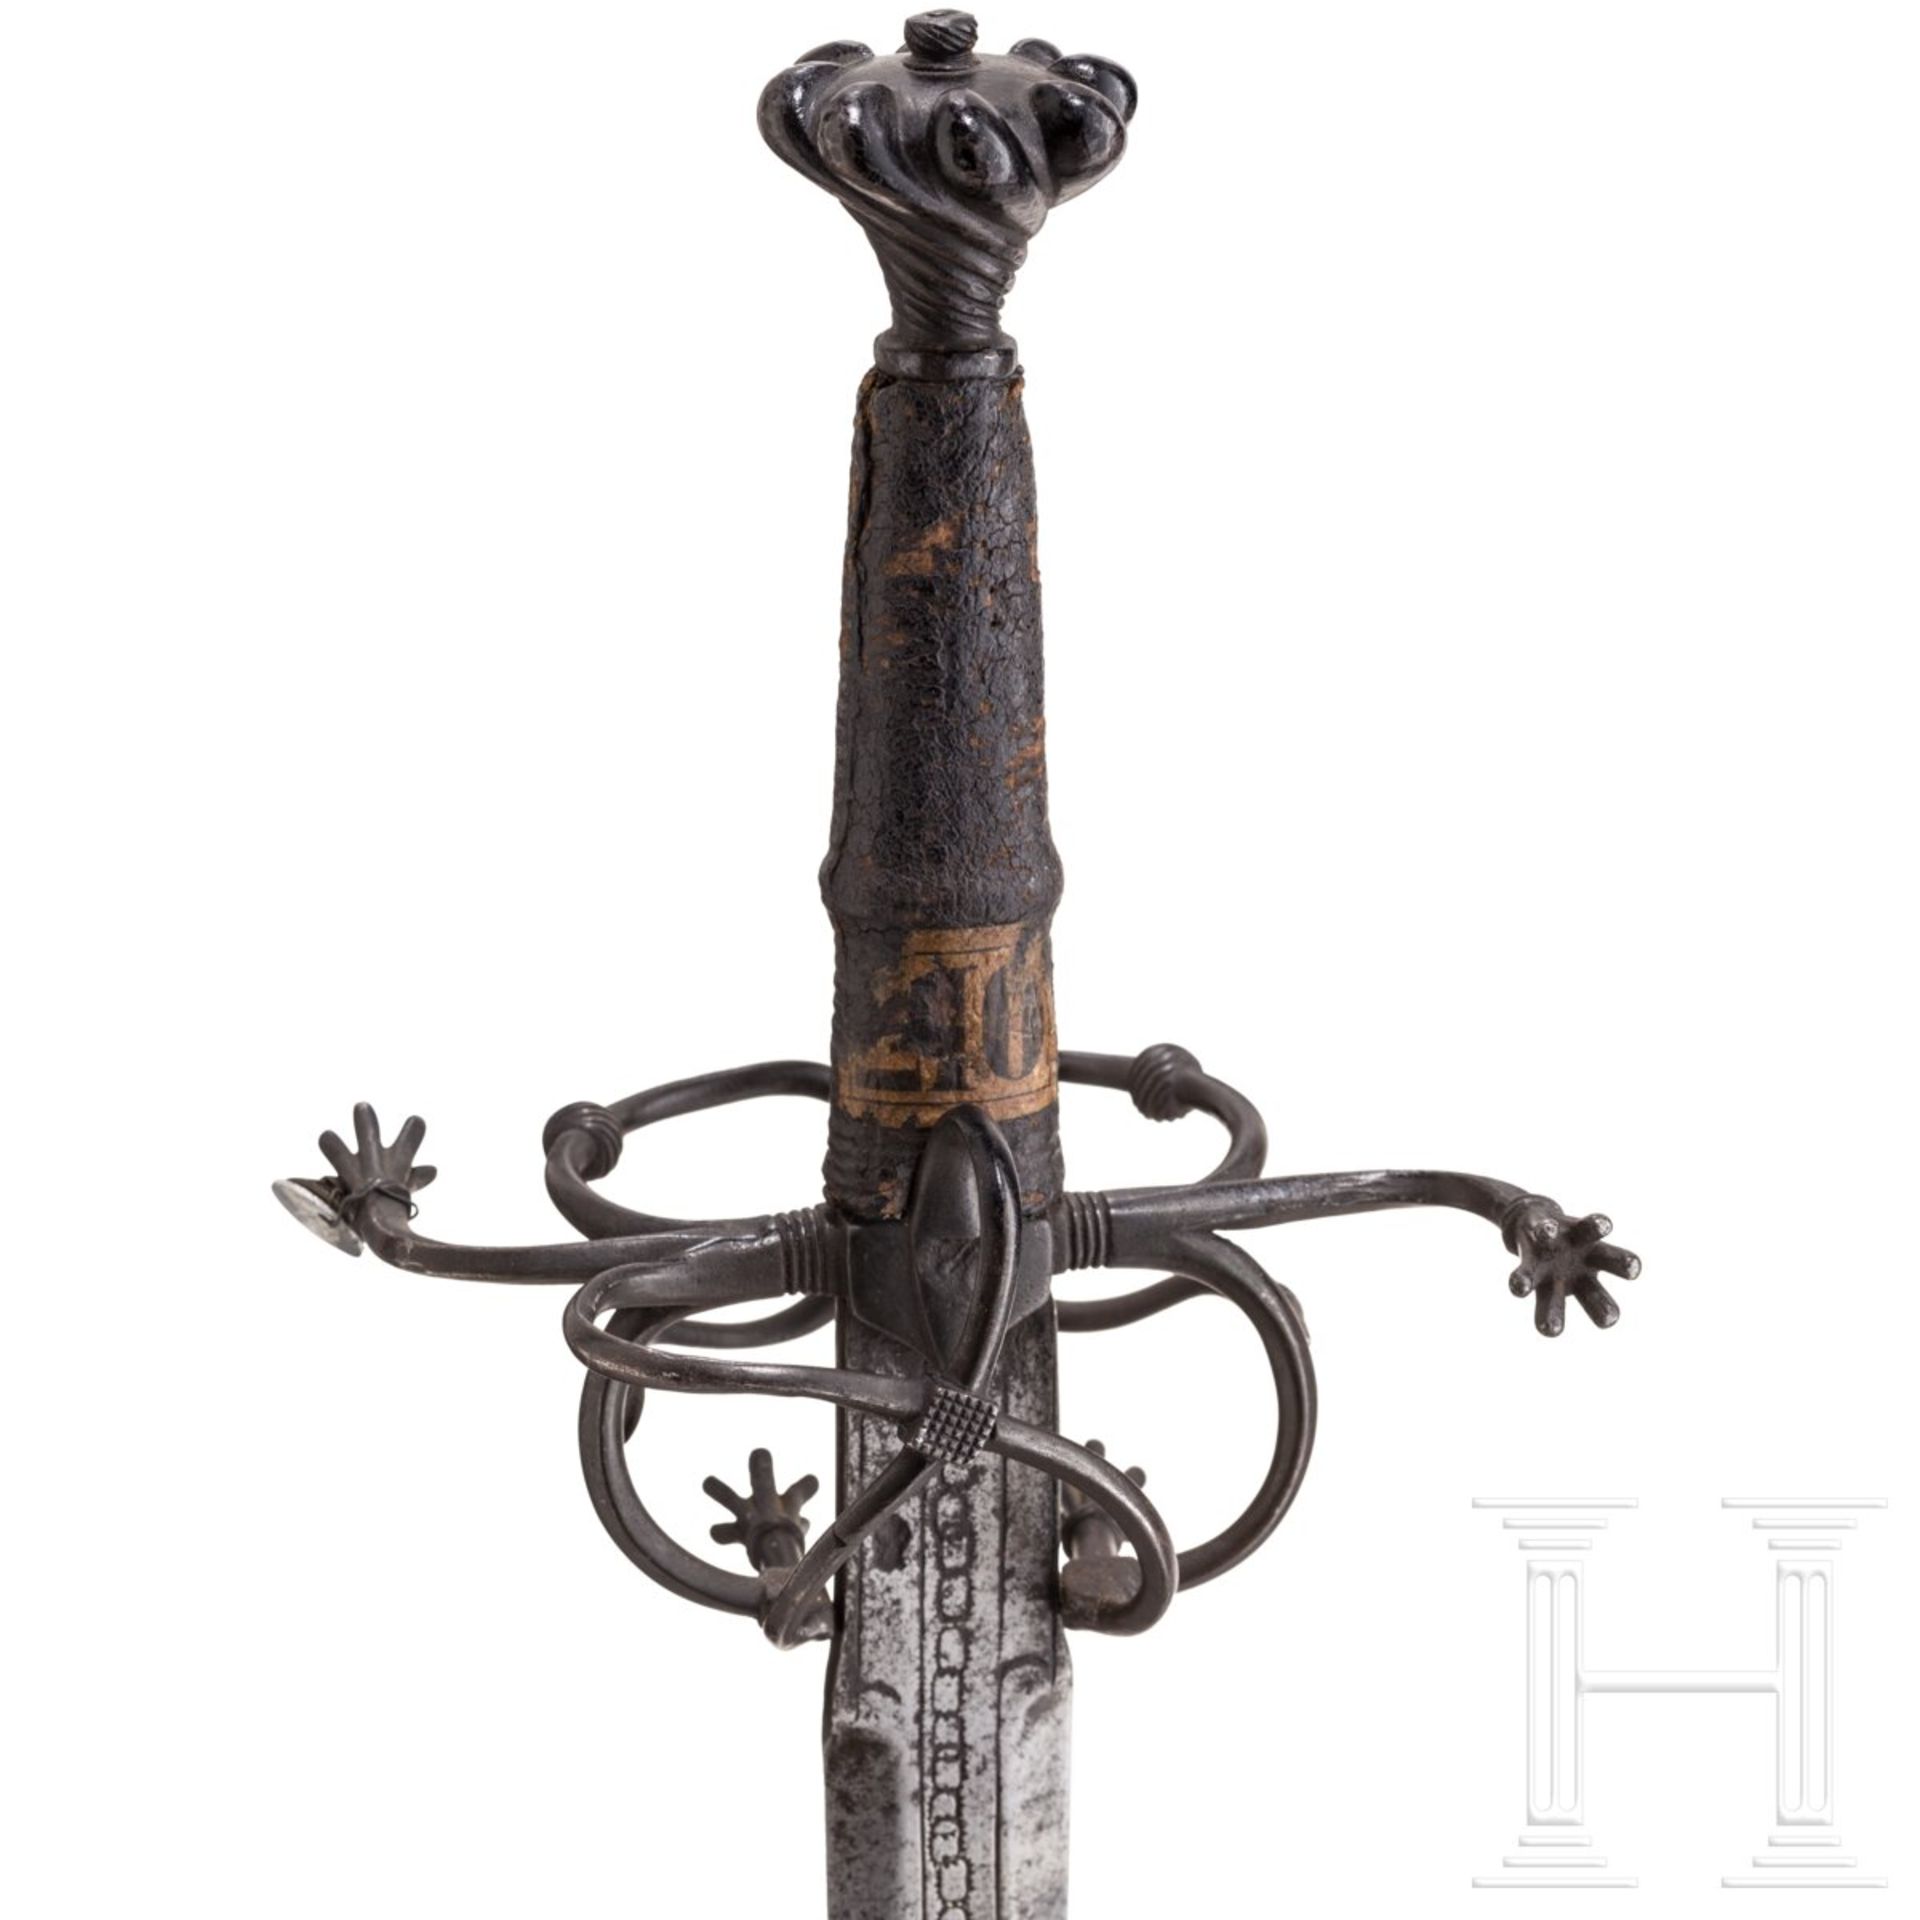 Ritterliches Schwert zu anderthalb Hand, süddeutsch, um 1530 - Bild 6 aus 9